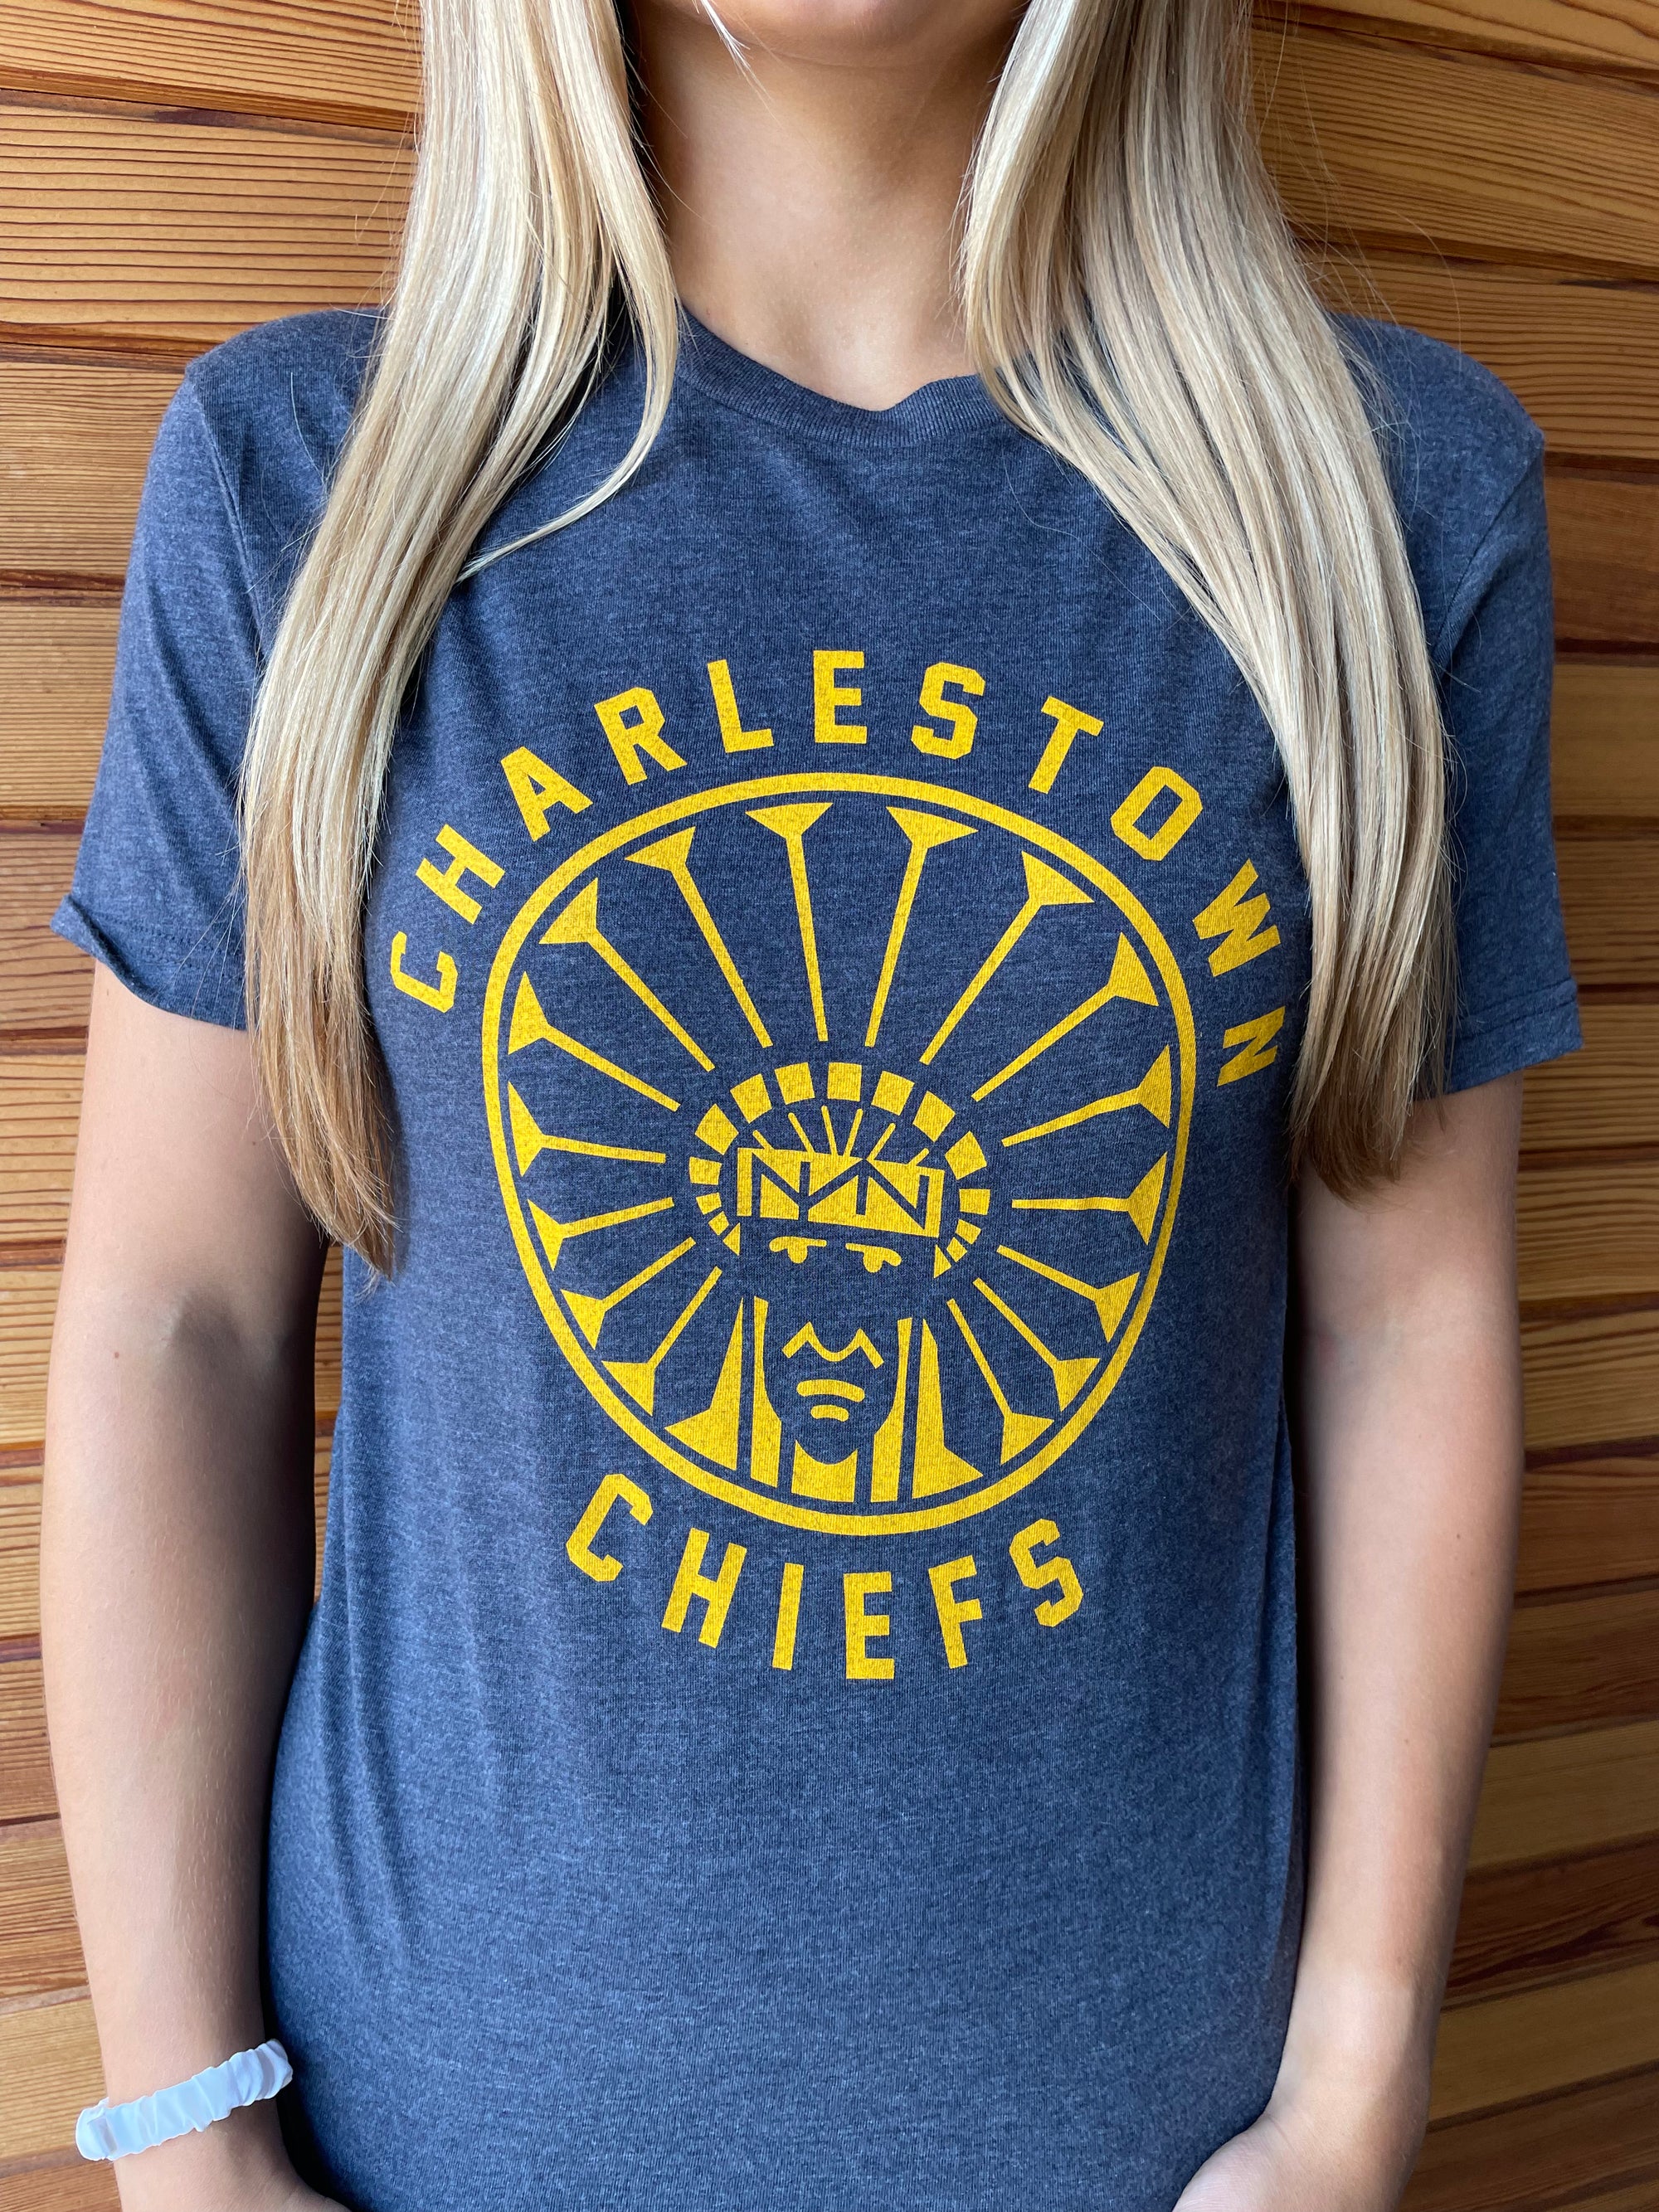 charleston chiefs shirt